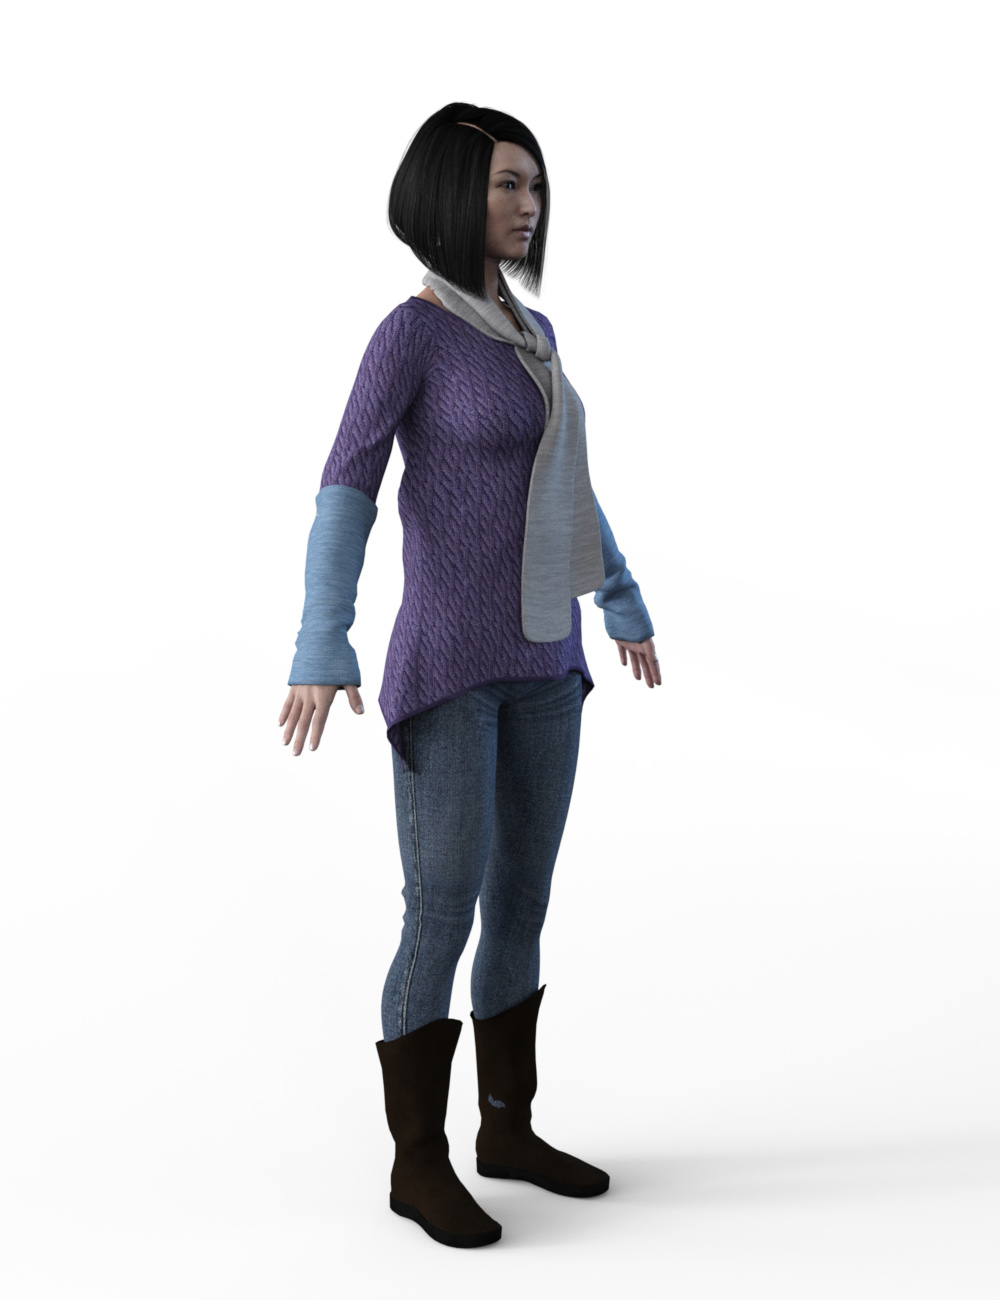 FBX- Mei Lin Frosty Winter Outfit by: Paleo, 3D Models by Daz 3D